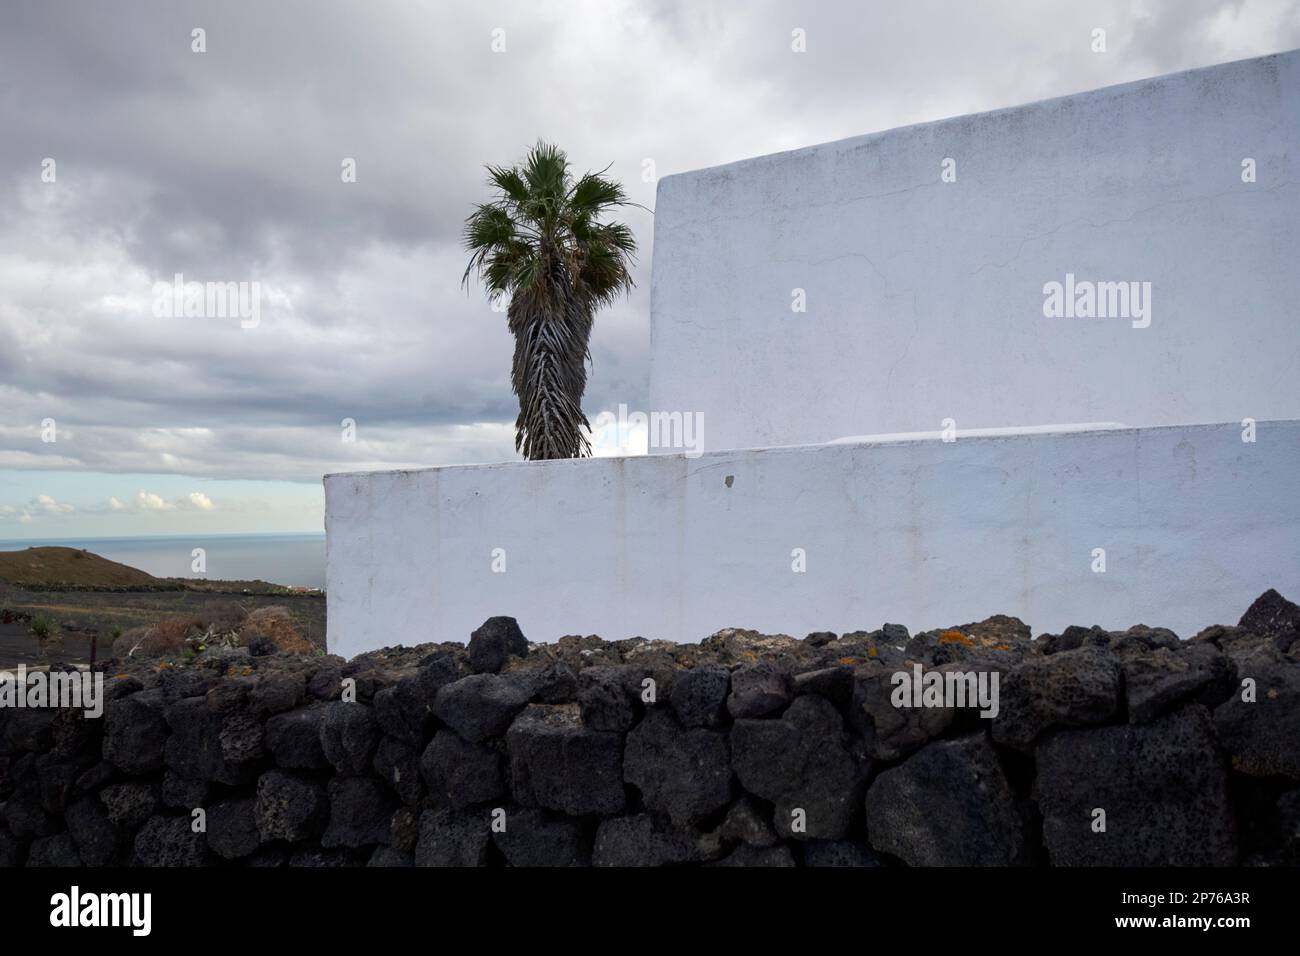 Construction carrée typique murs blanchis à la chaux mur de roche volcanique et palmier d'une petite ferme Lanzarote, îles Canaries, Espagne Banque D'Images